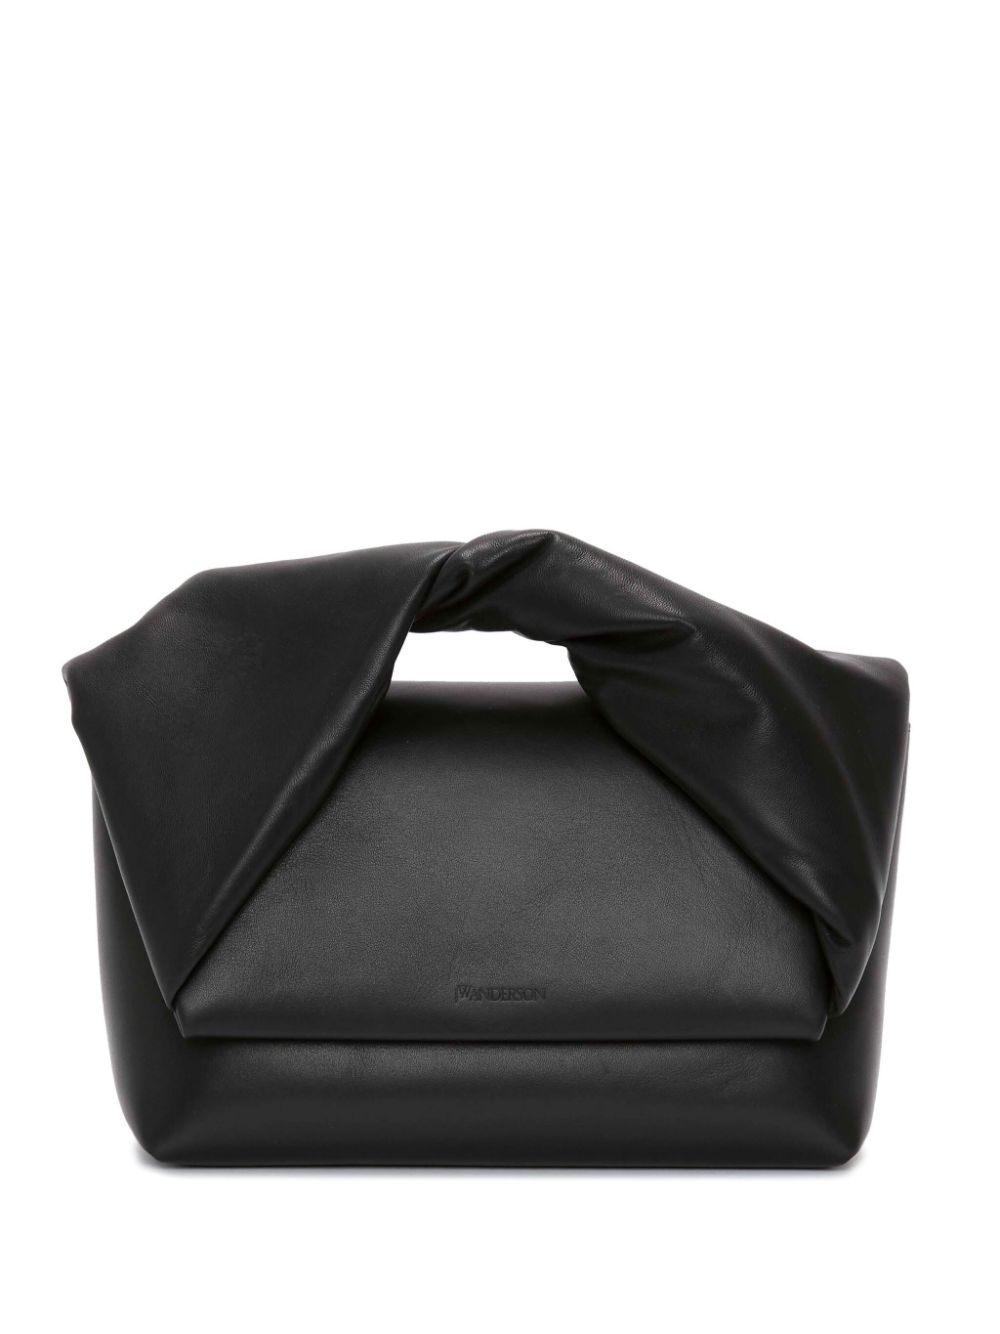 JW Anderson large Twister leather shoulder bag - Black